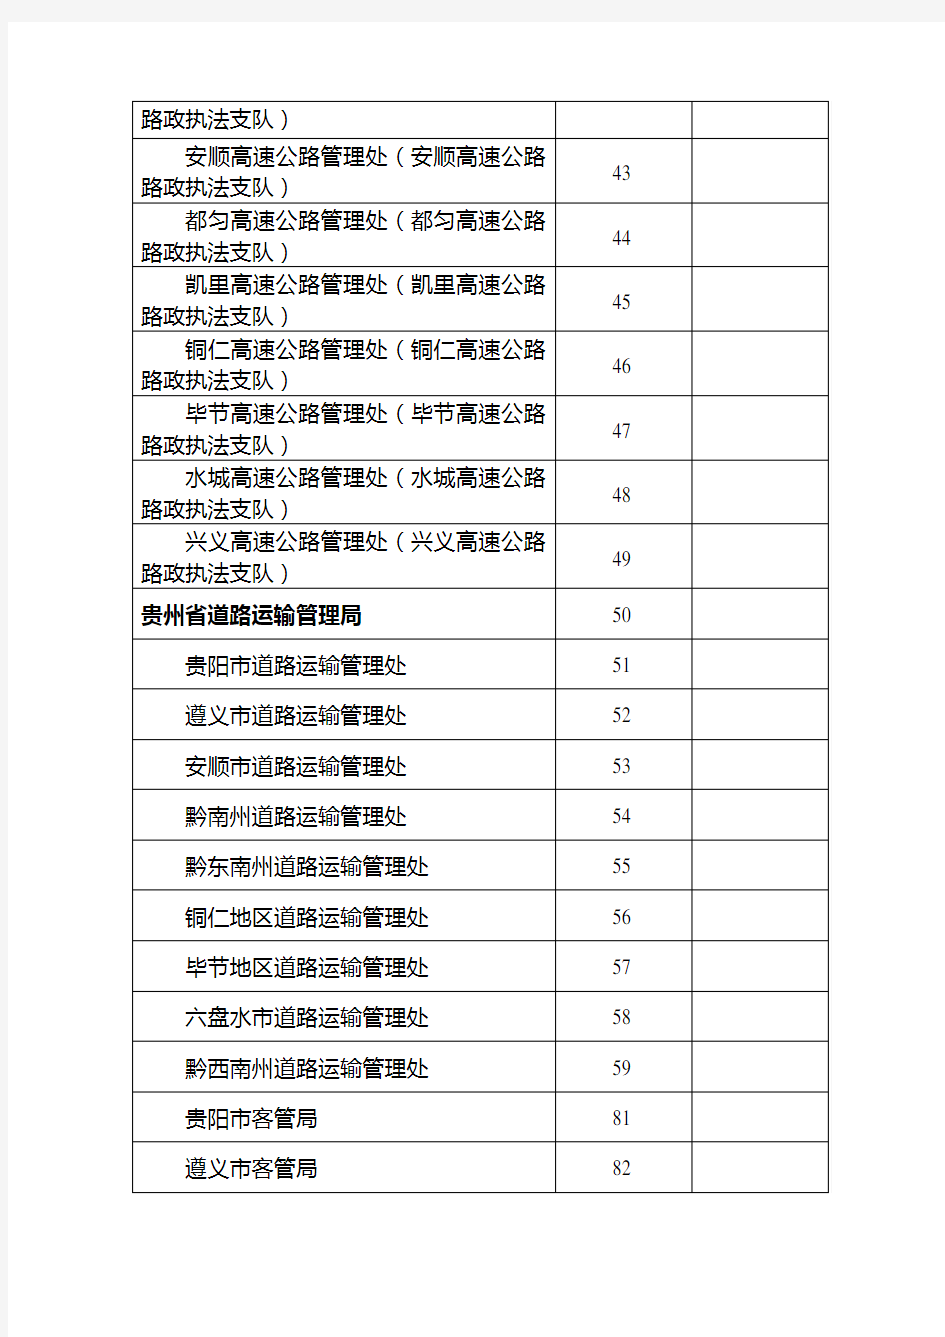 执法人员证件号码编号规则 - 贵州省交通运输厅